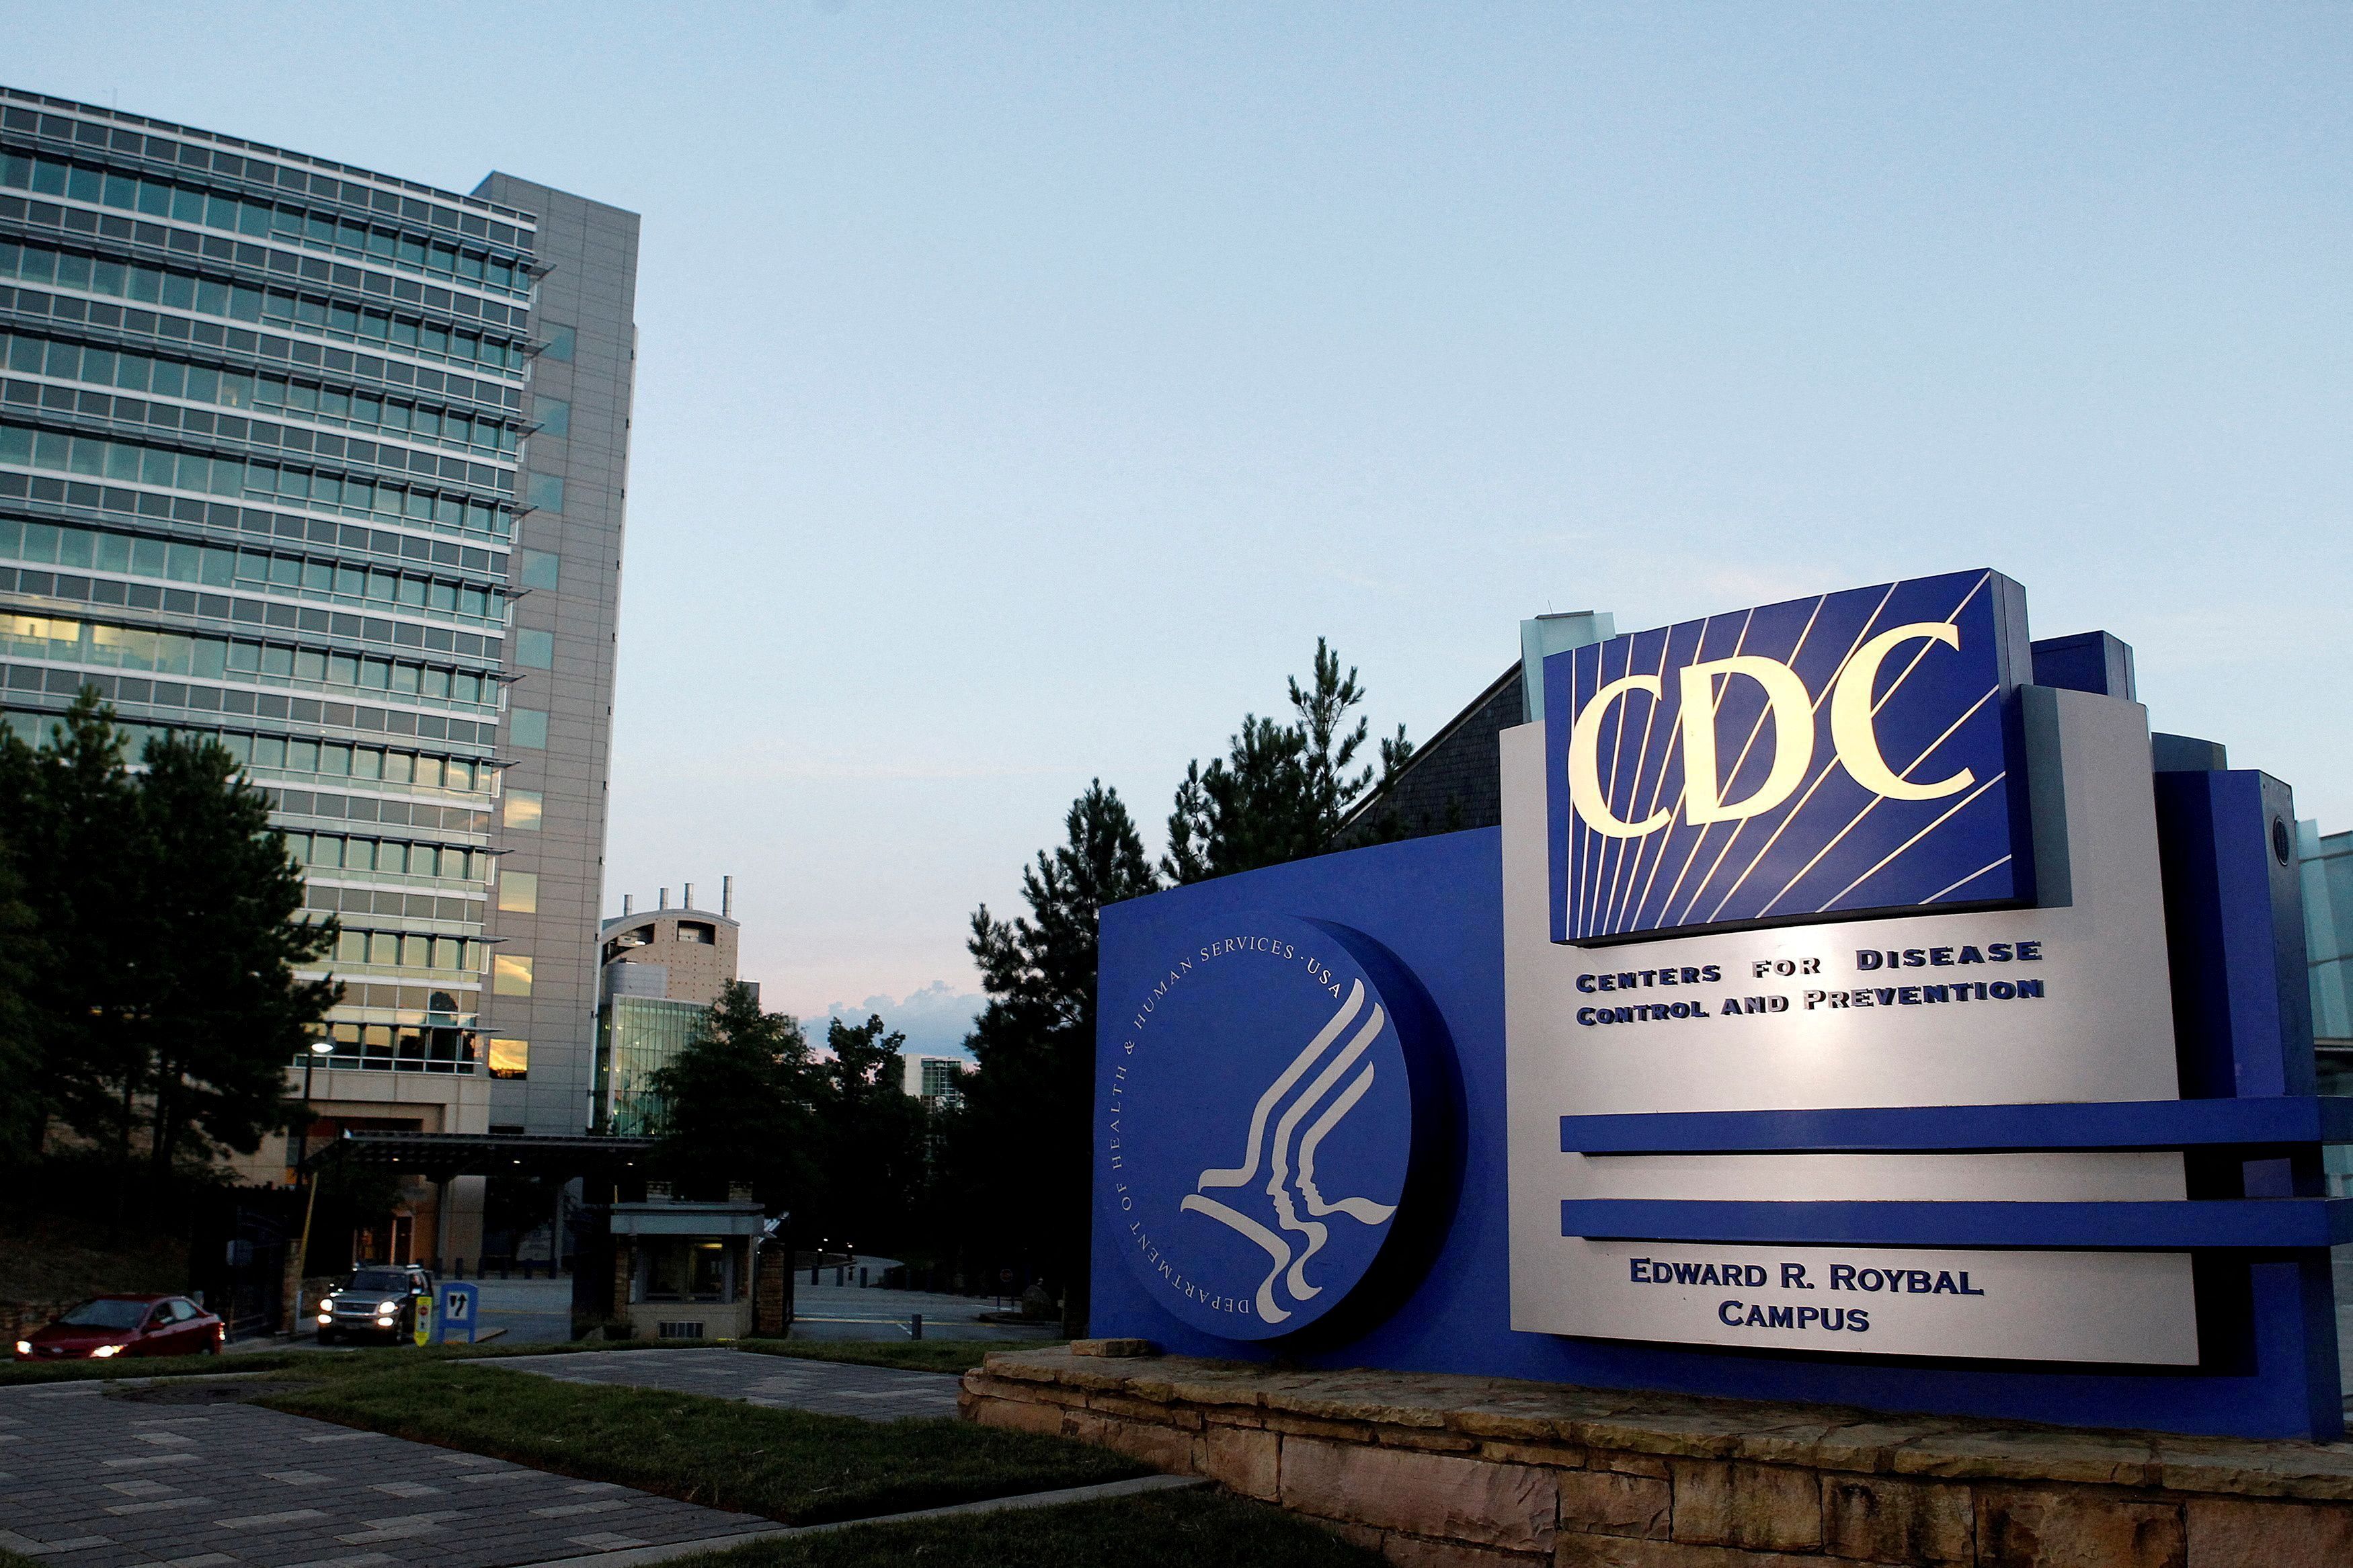 FOTO DE ARCHIVO: Una vista general de la sede de los Centros de Control y Prevención de Enfermedades (CDC) de Estados Unidos en Atlanta, Georgia 30 de septiembre de 2014.  REUTERS/Tami Chappell